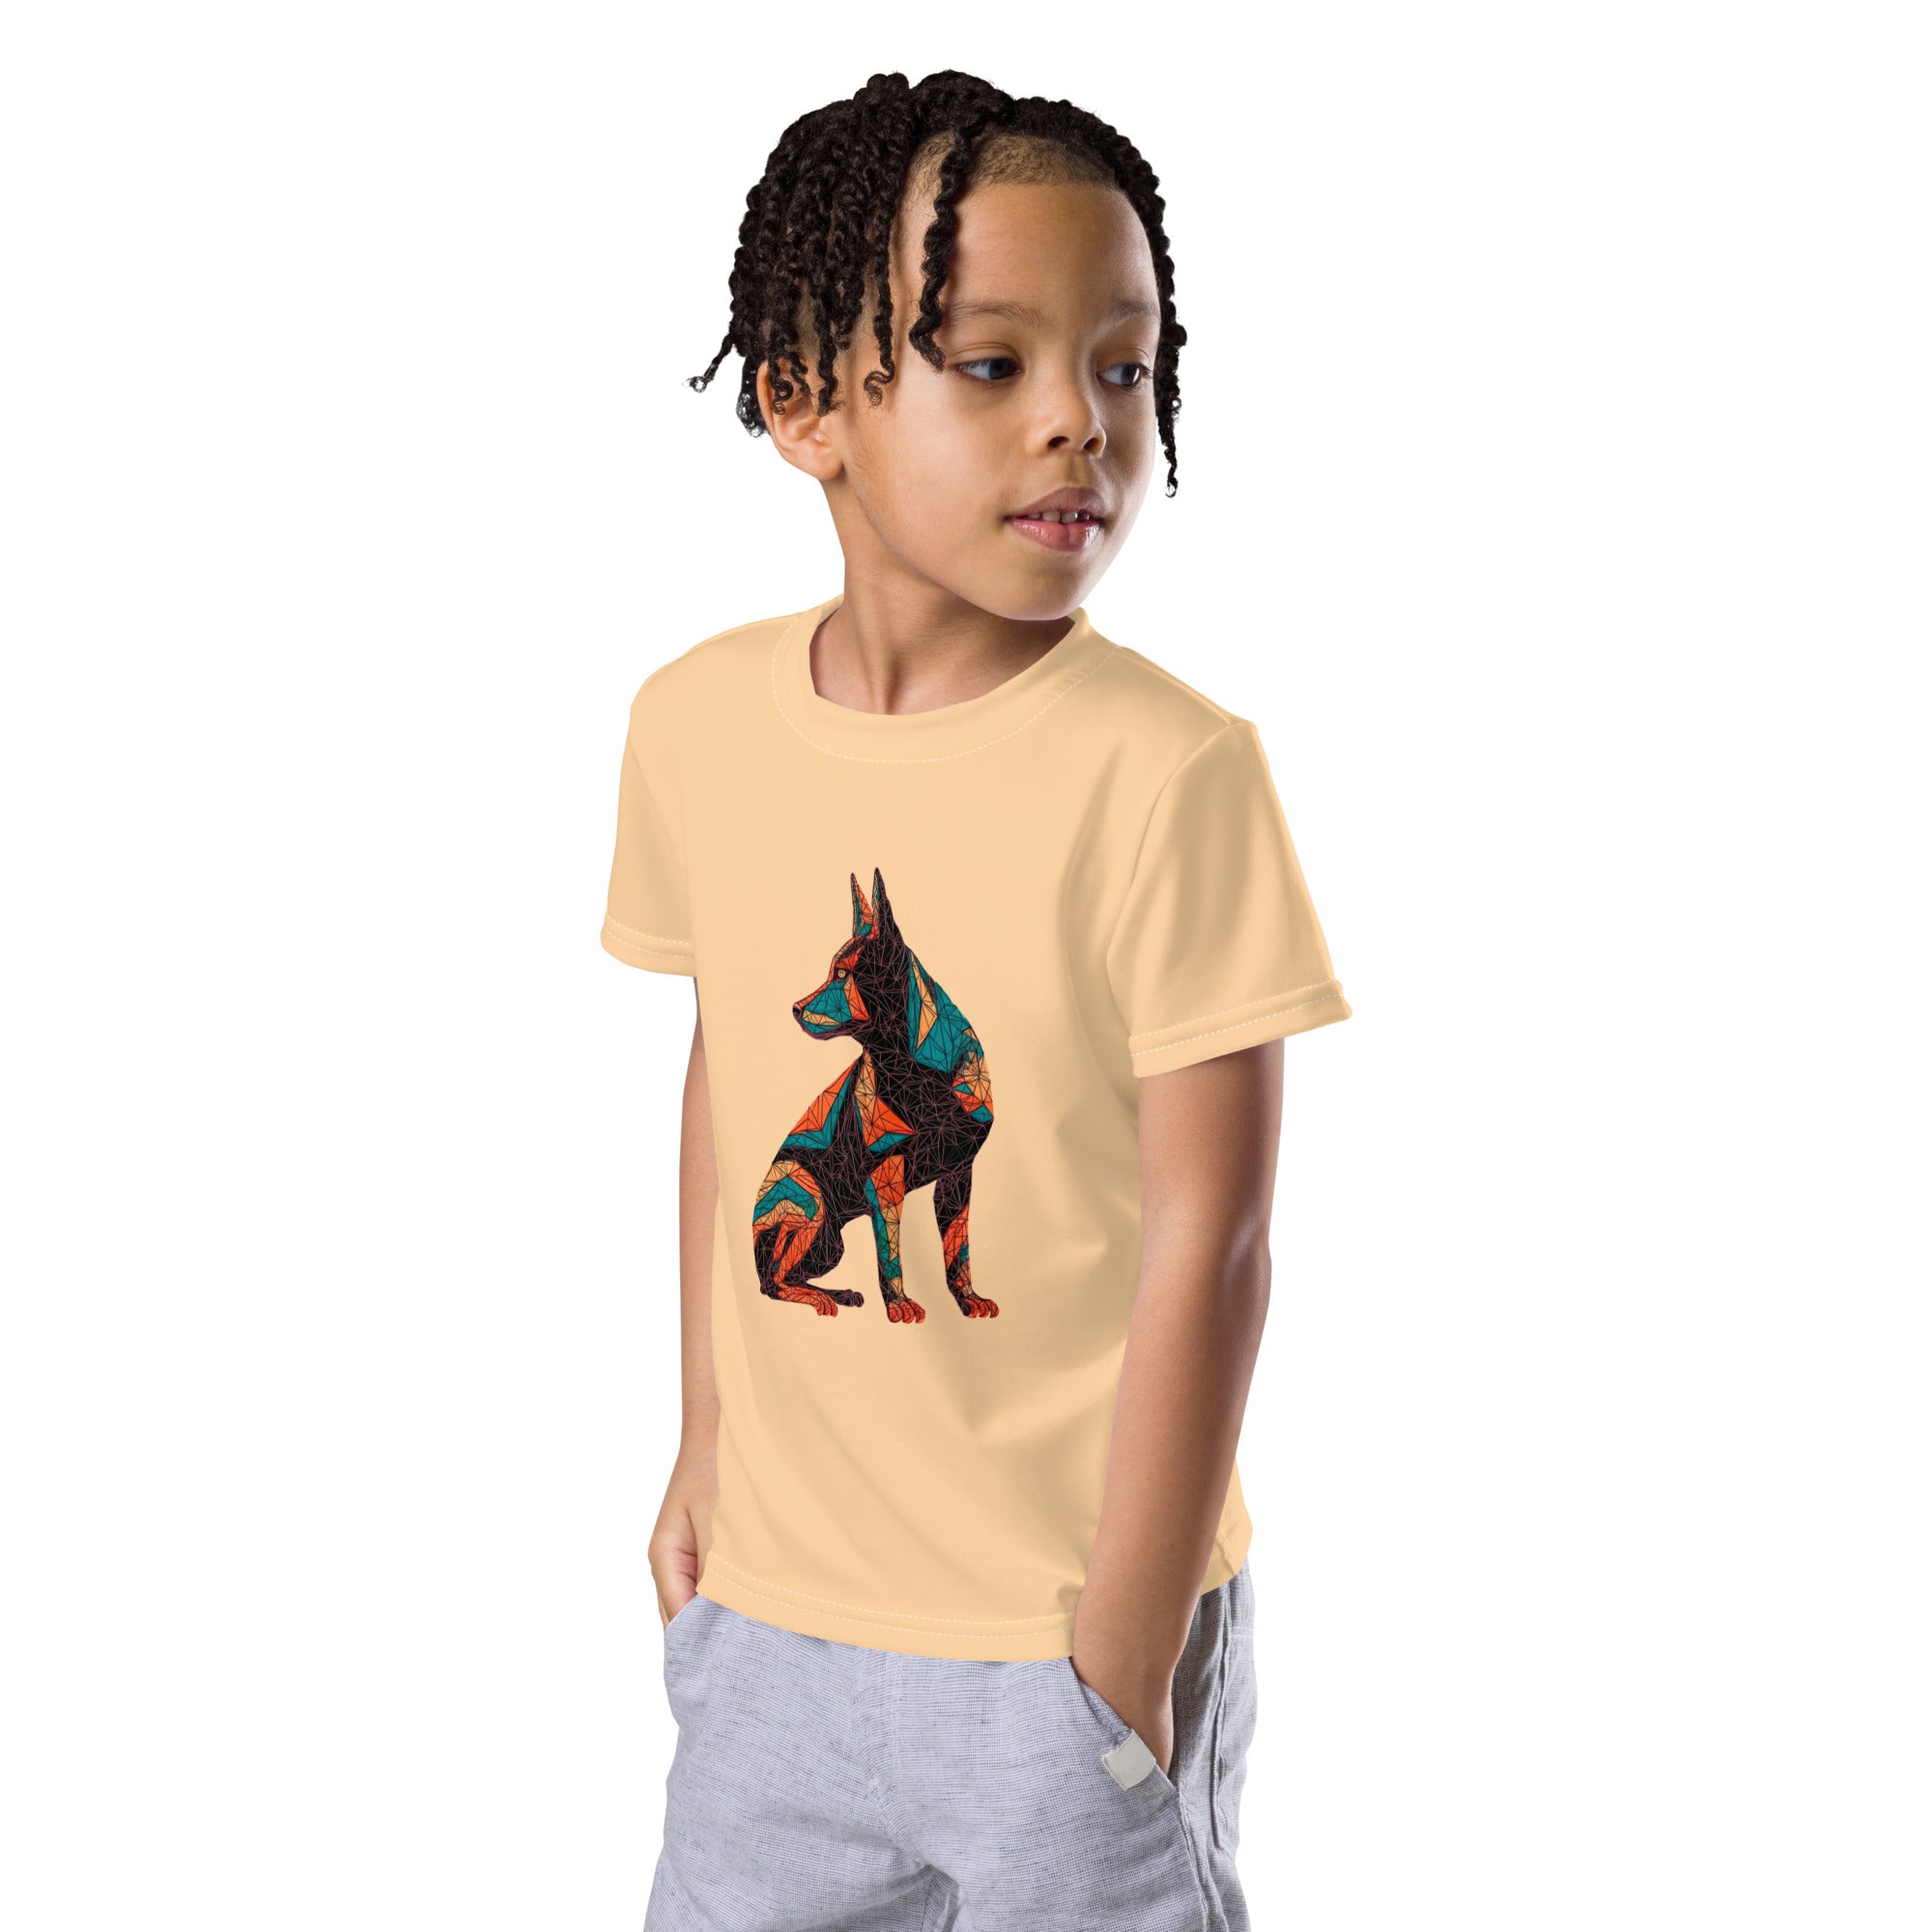 Pup’s Playful Puddle Pounce Kids T-Shirt